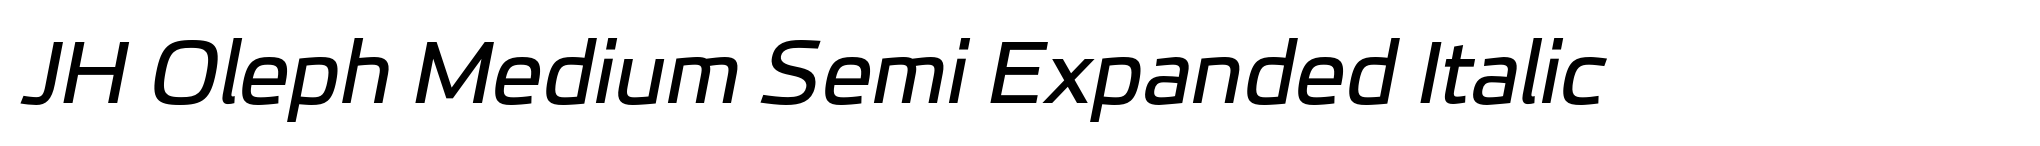 JH Oleph Medium Semi Expanded Italic image